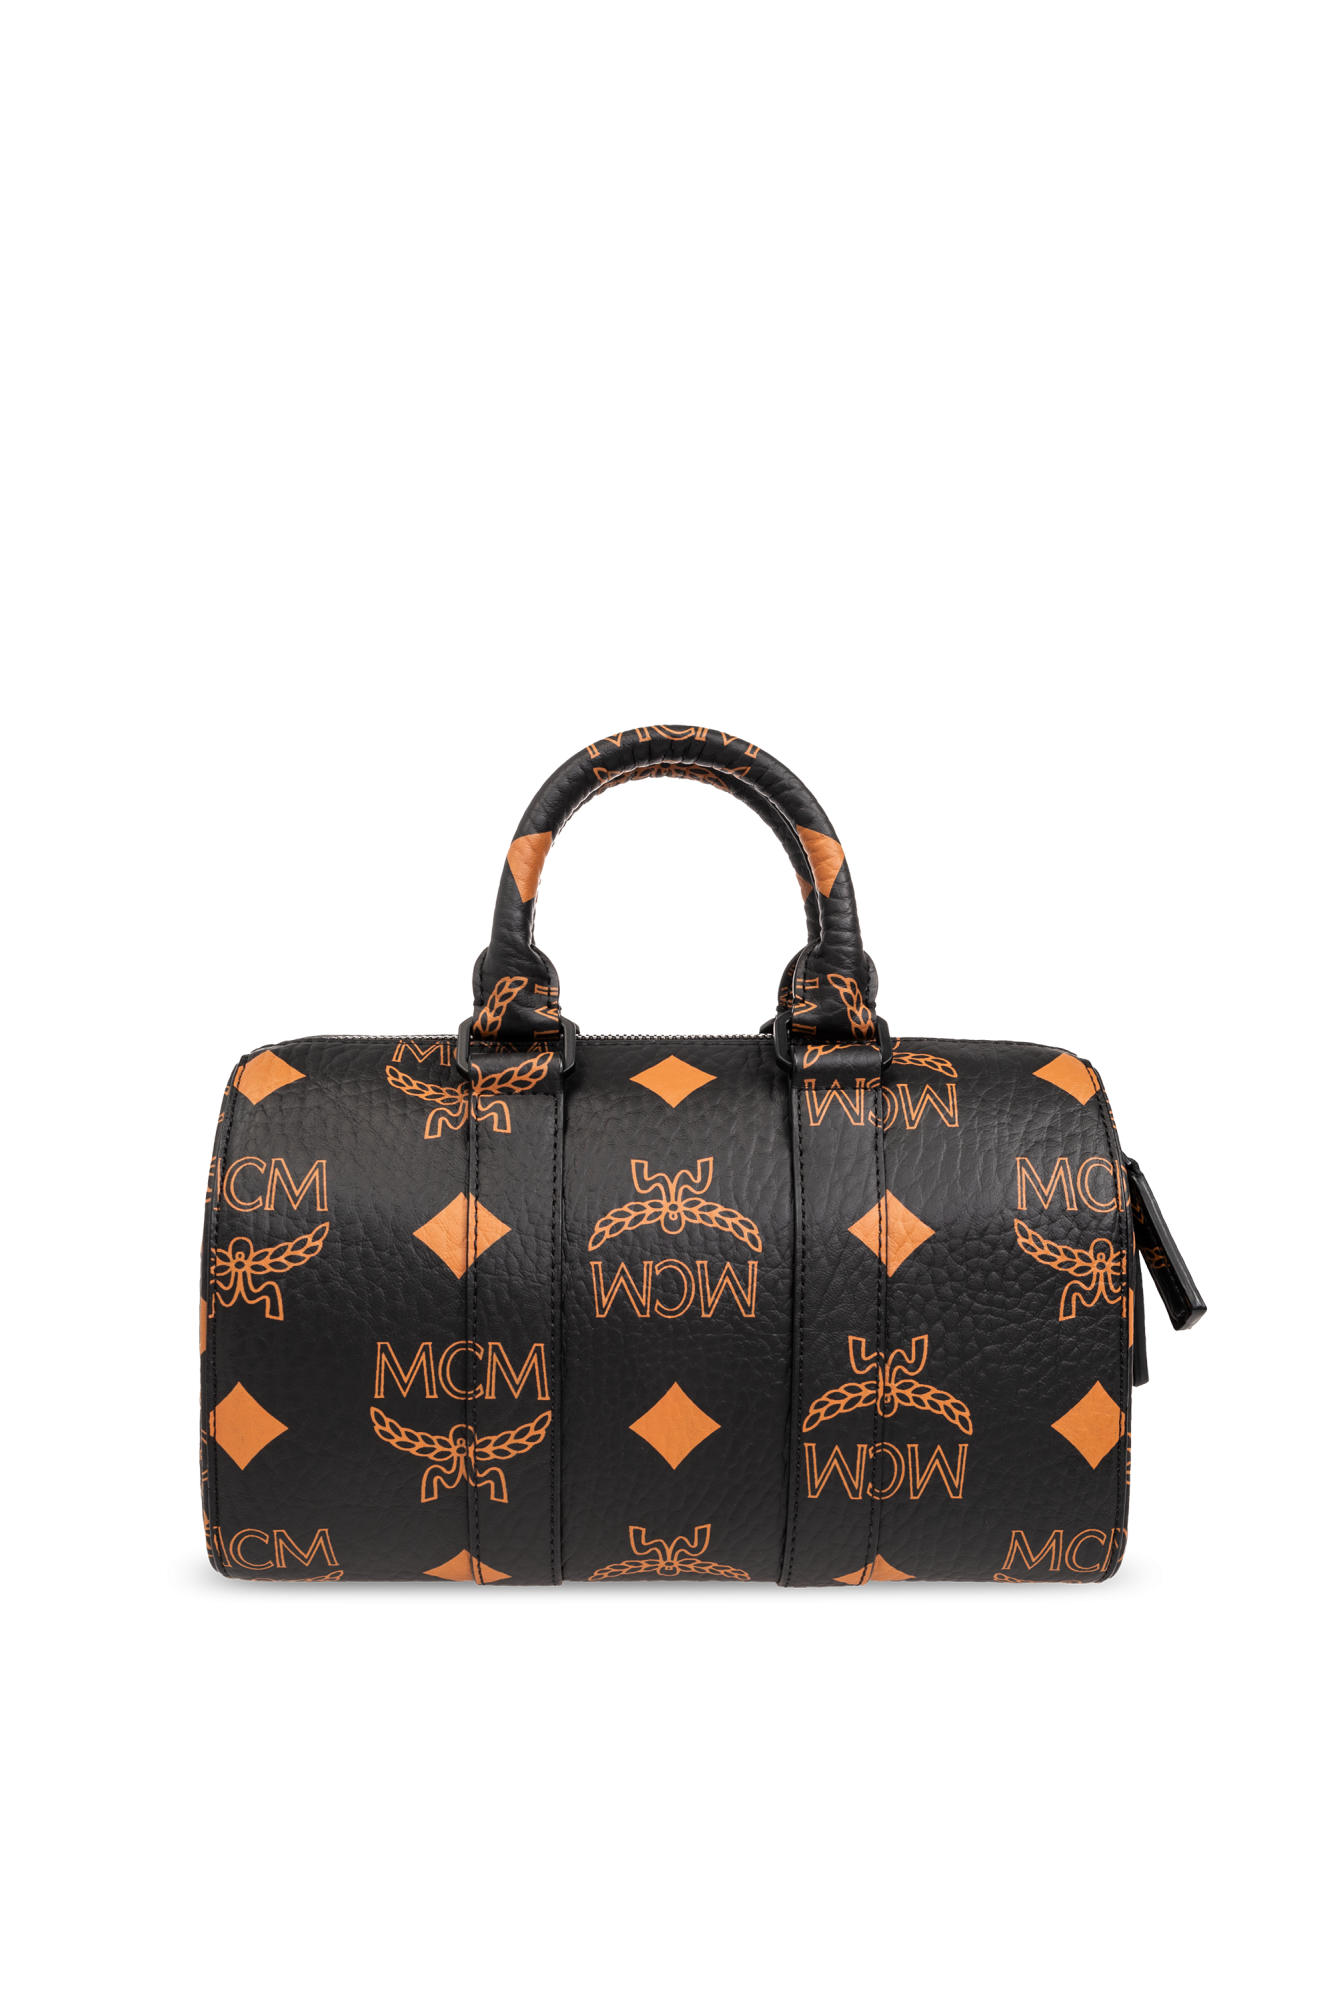 Mcm Aren Boston Bag in Maxi Visetos Black Visetos